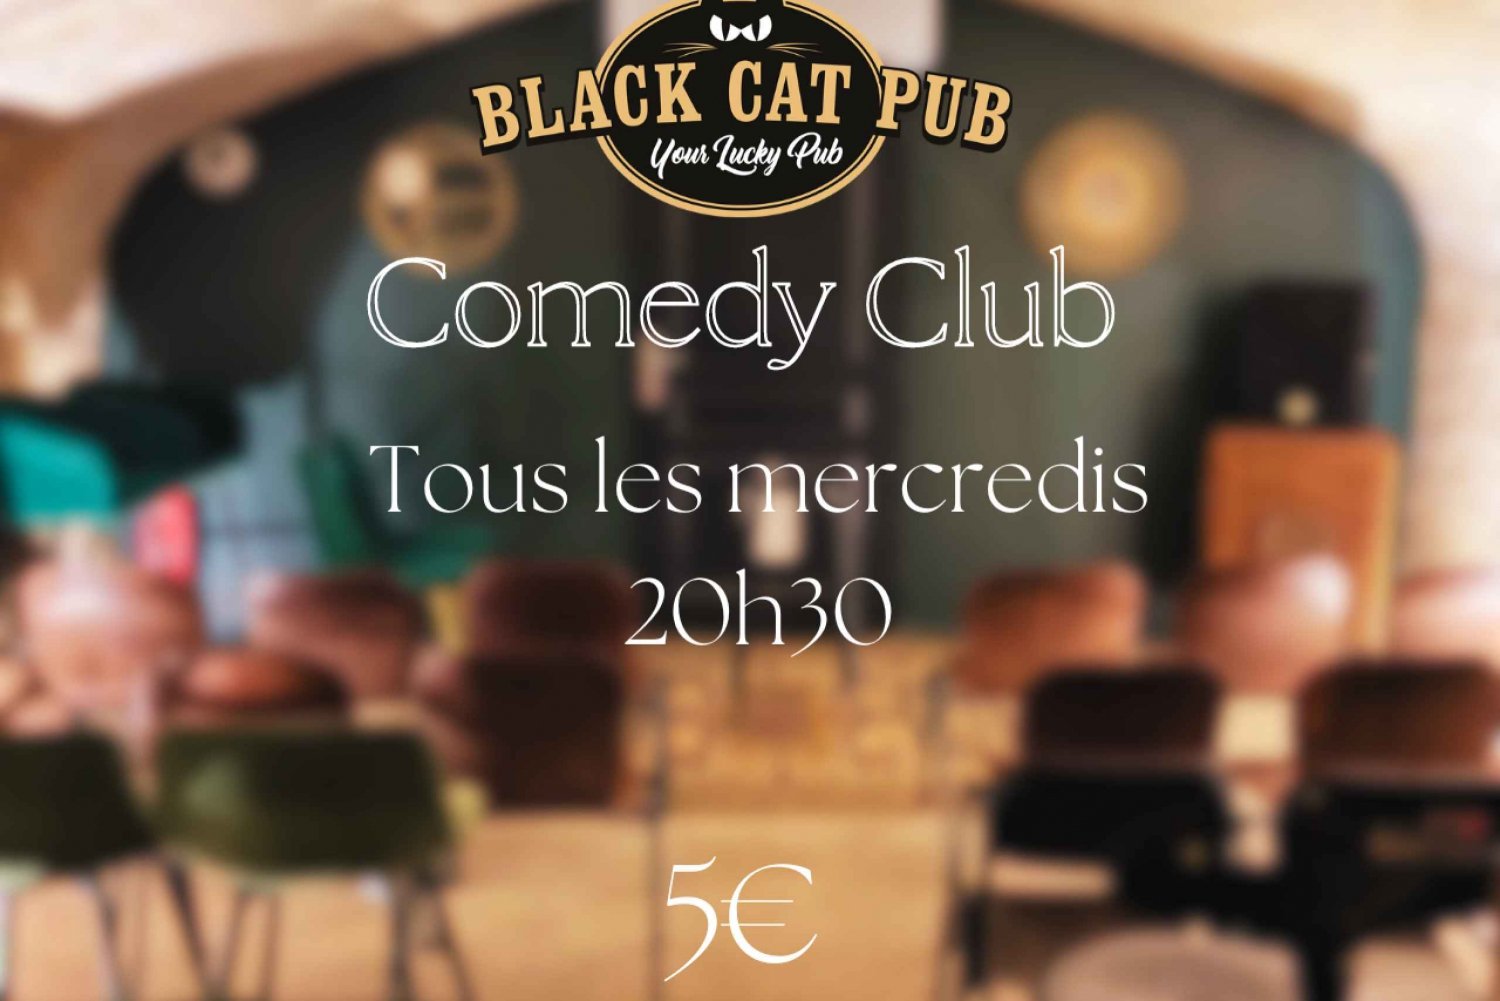 El Club de la Comedia del Gato Negro